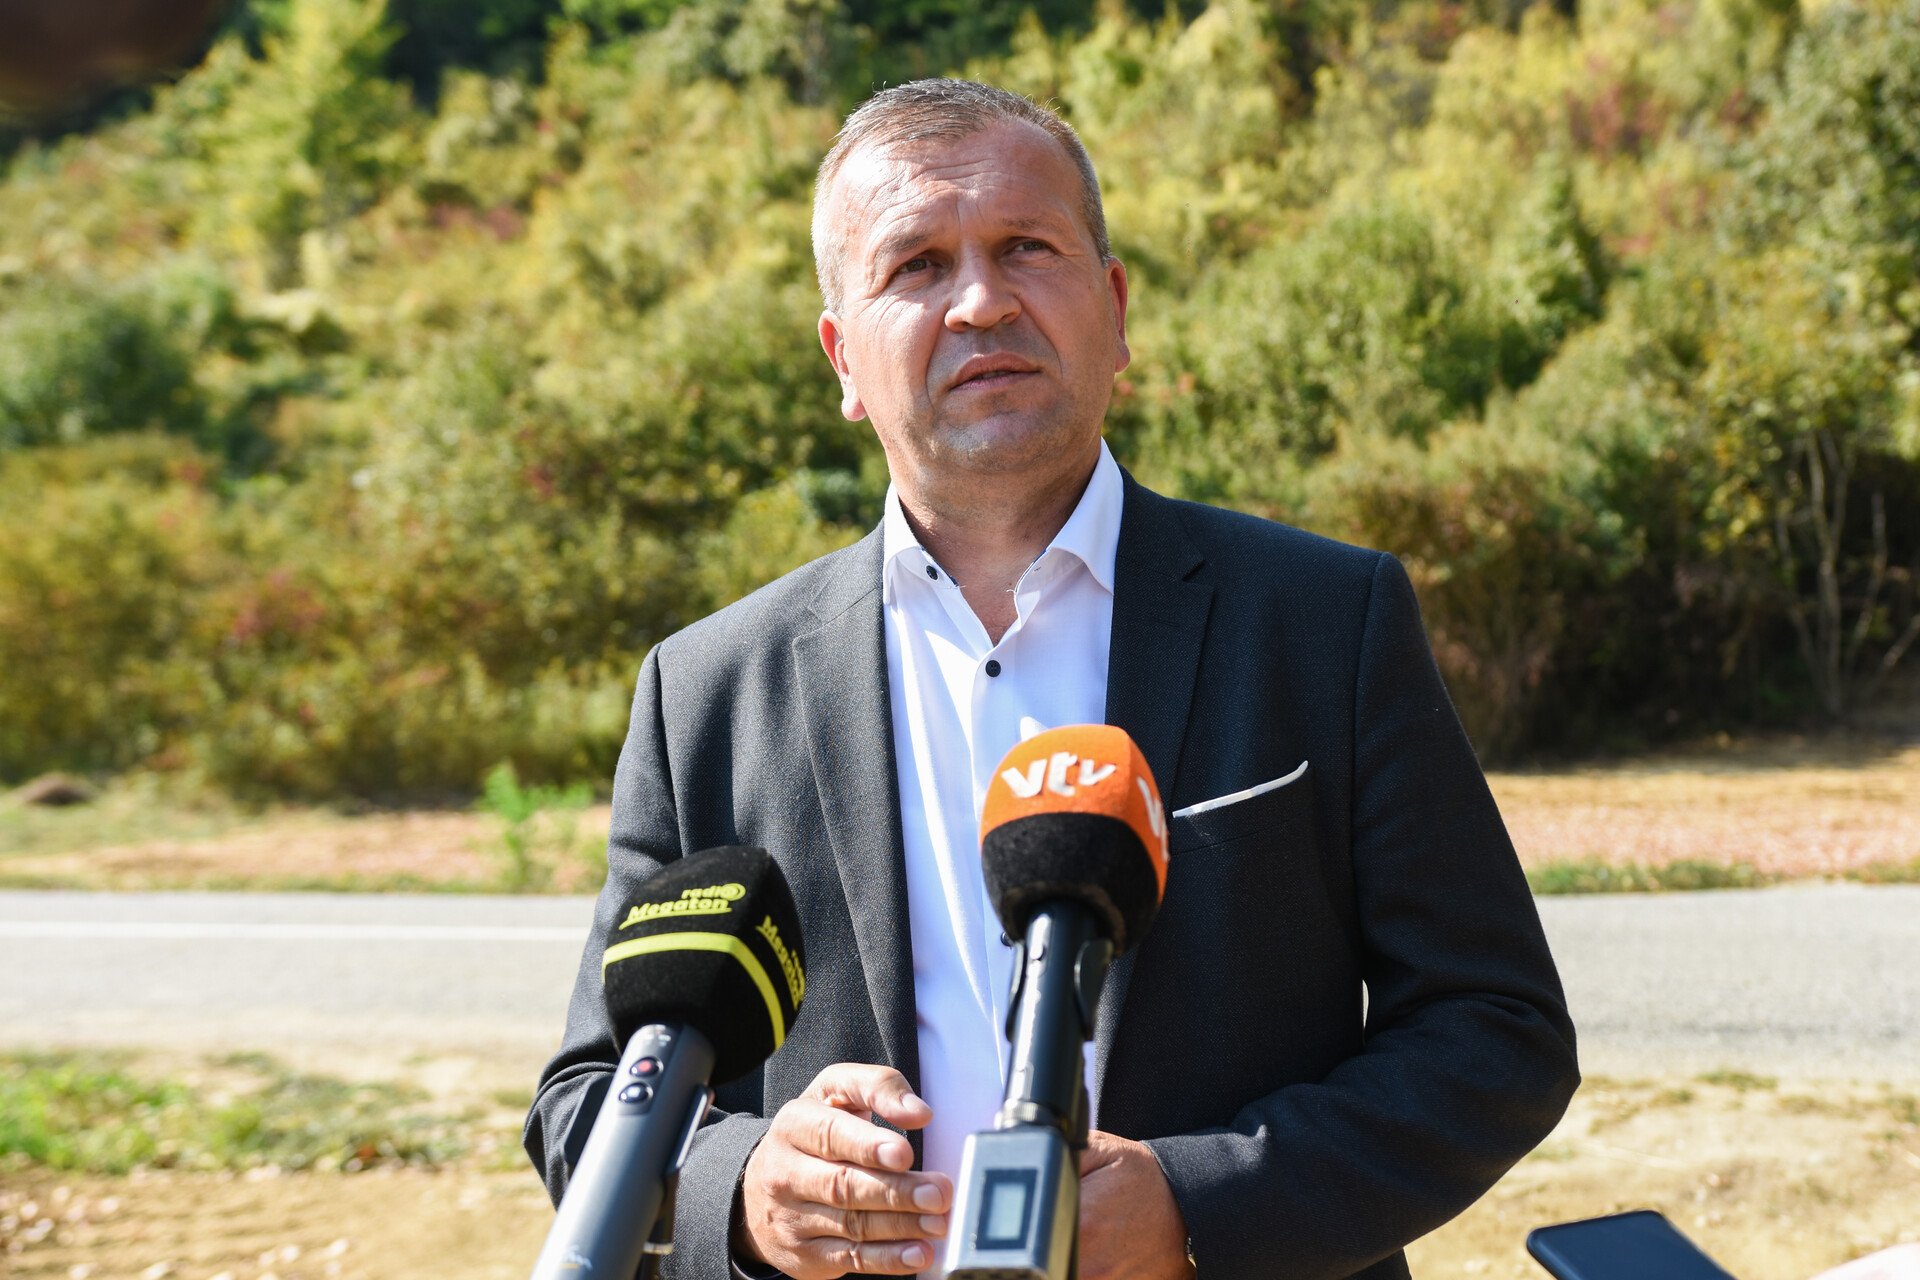 Župan je ovog tjedna obznanio kako će Hrvatske vode nastaviti financiranje, te Varkomu vratiti dosada utrošeni novac